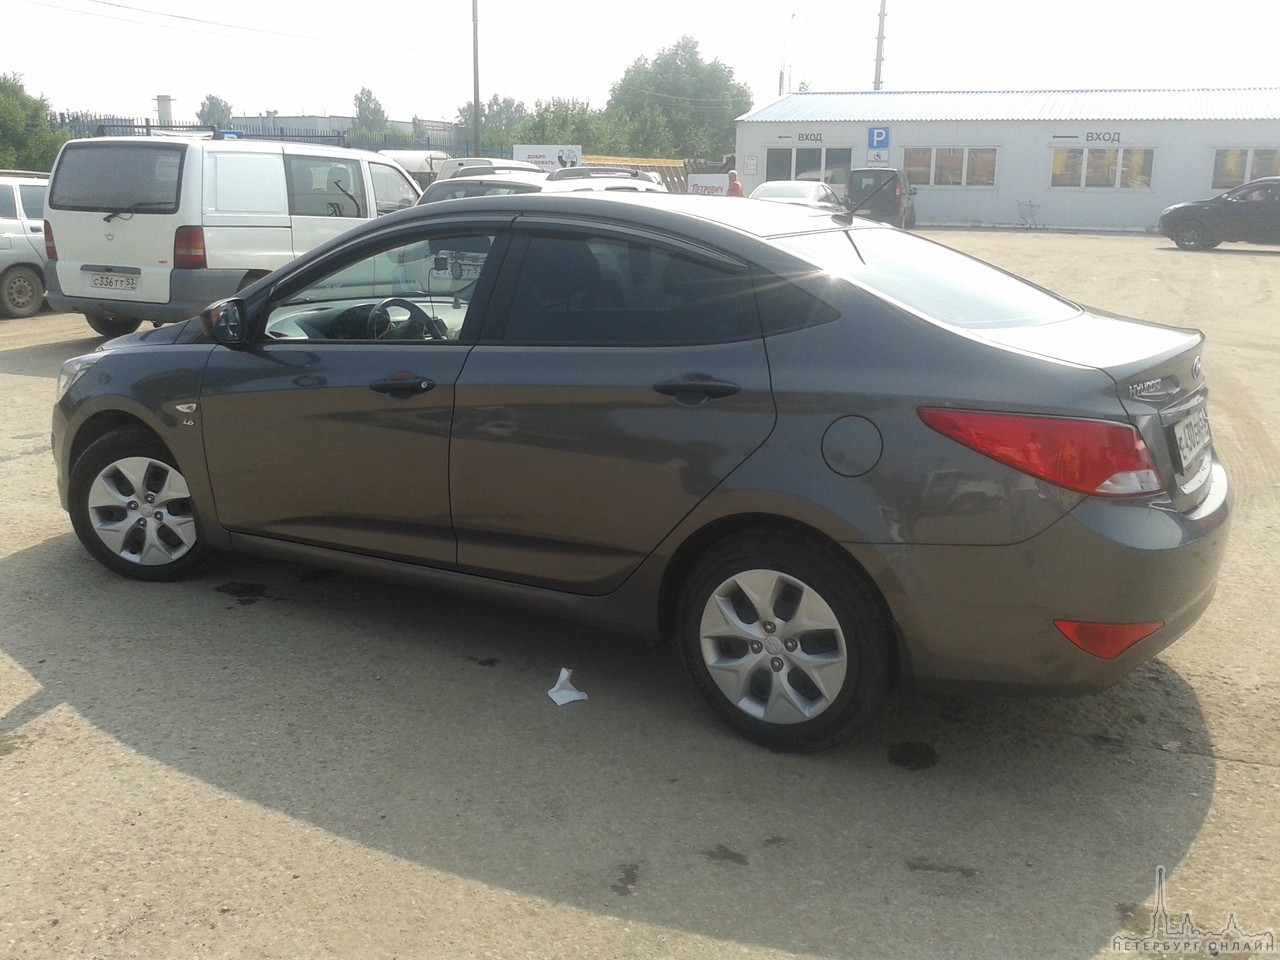 21 июня с кармана пр. Энергетиков д.54-60 был угнан автомобиль Hyundai Solaris седан серого цвета, 2...